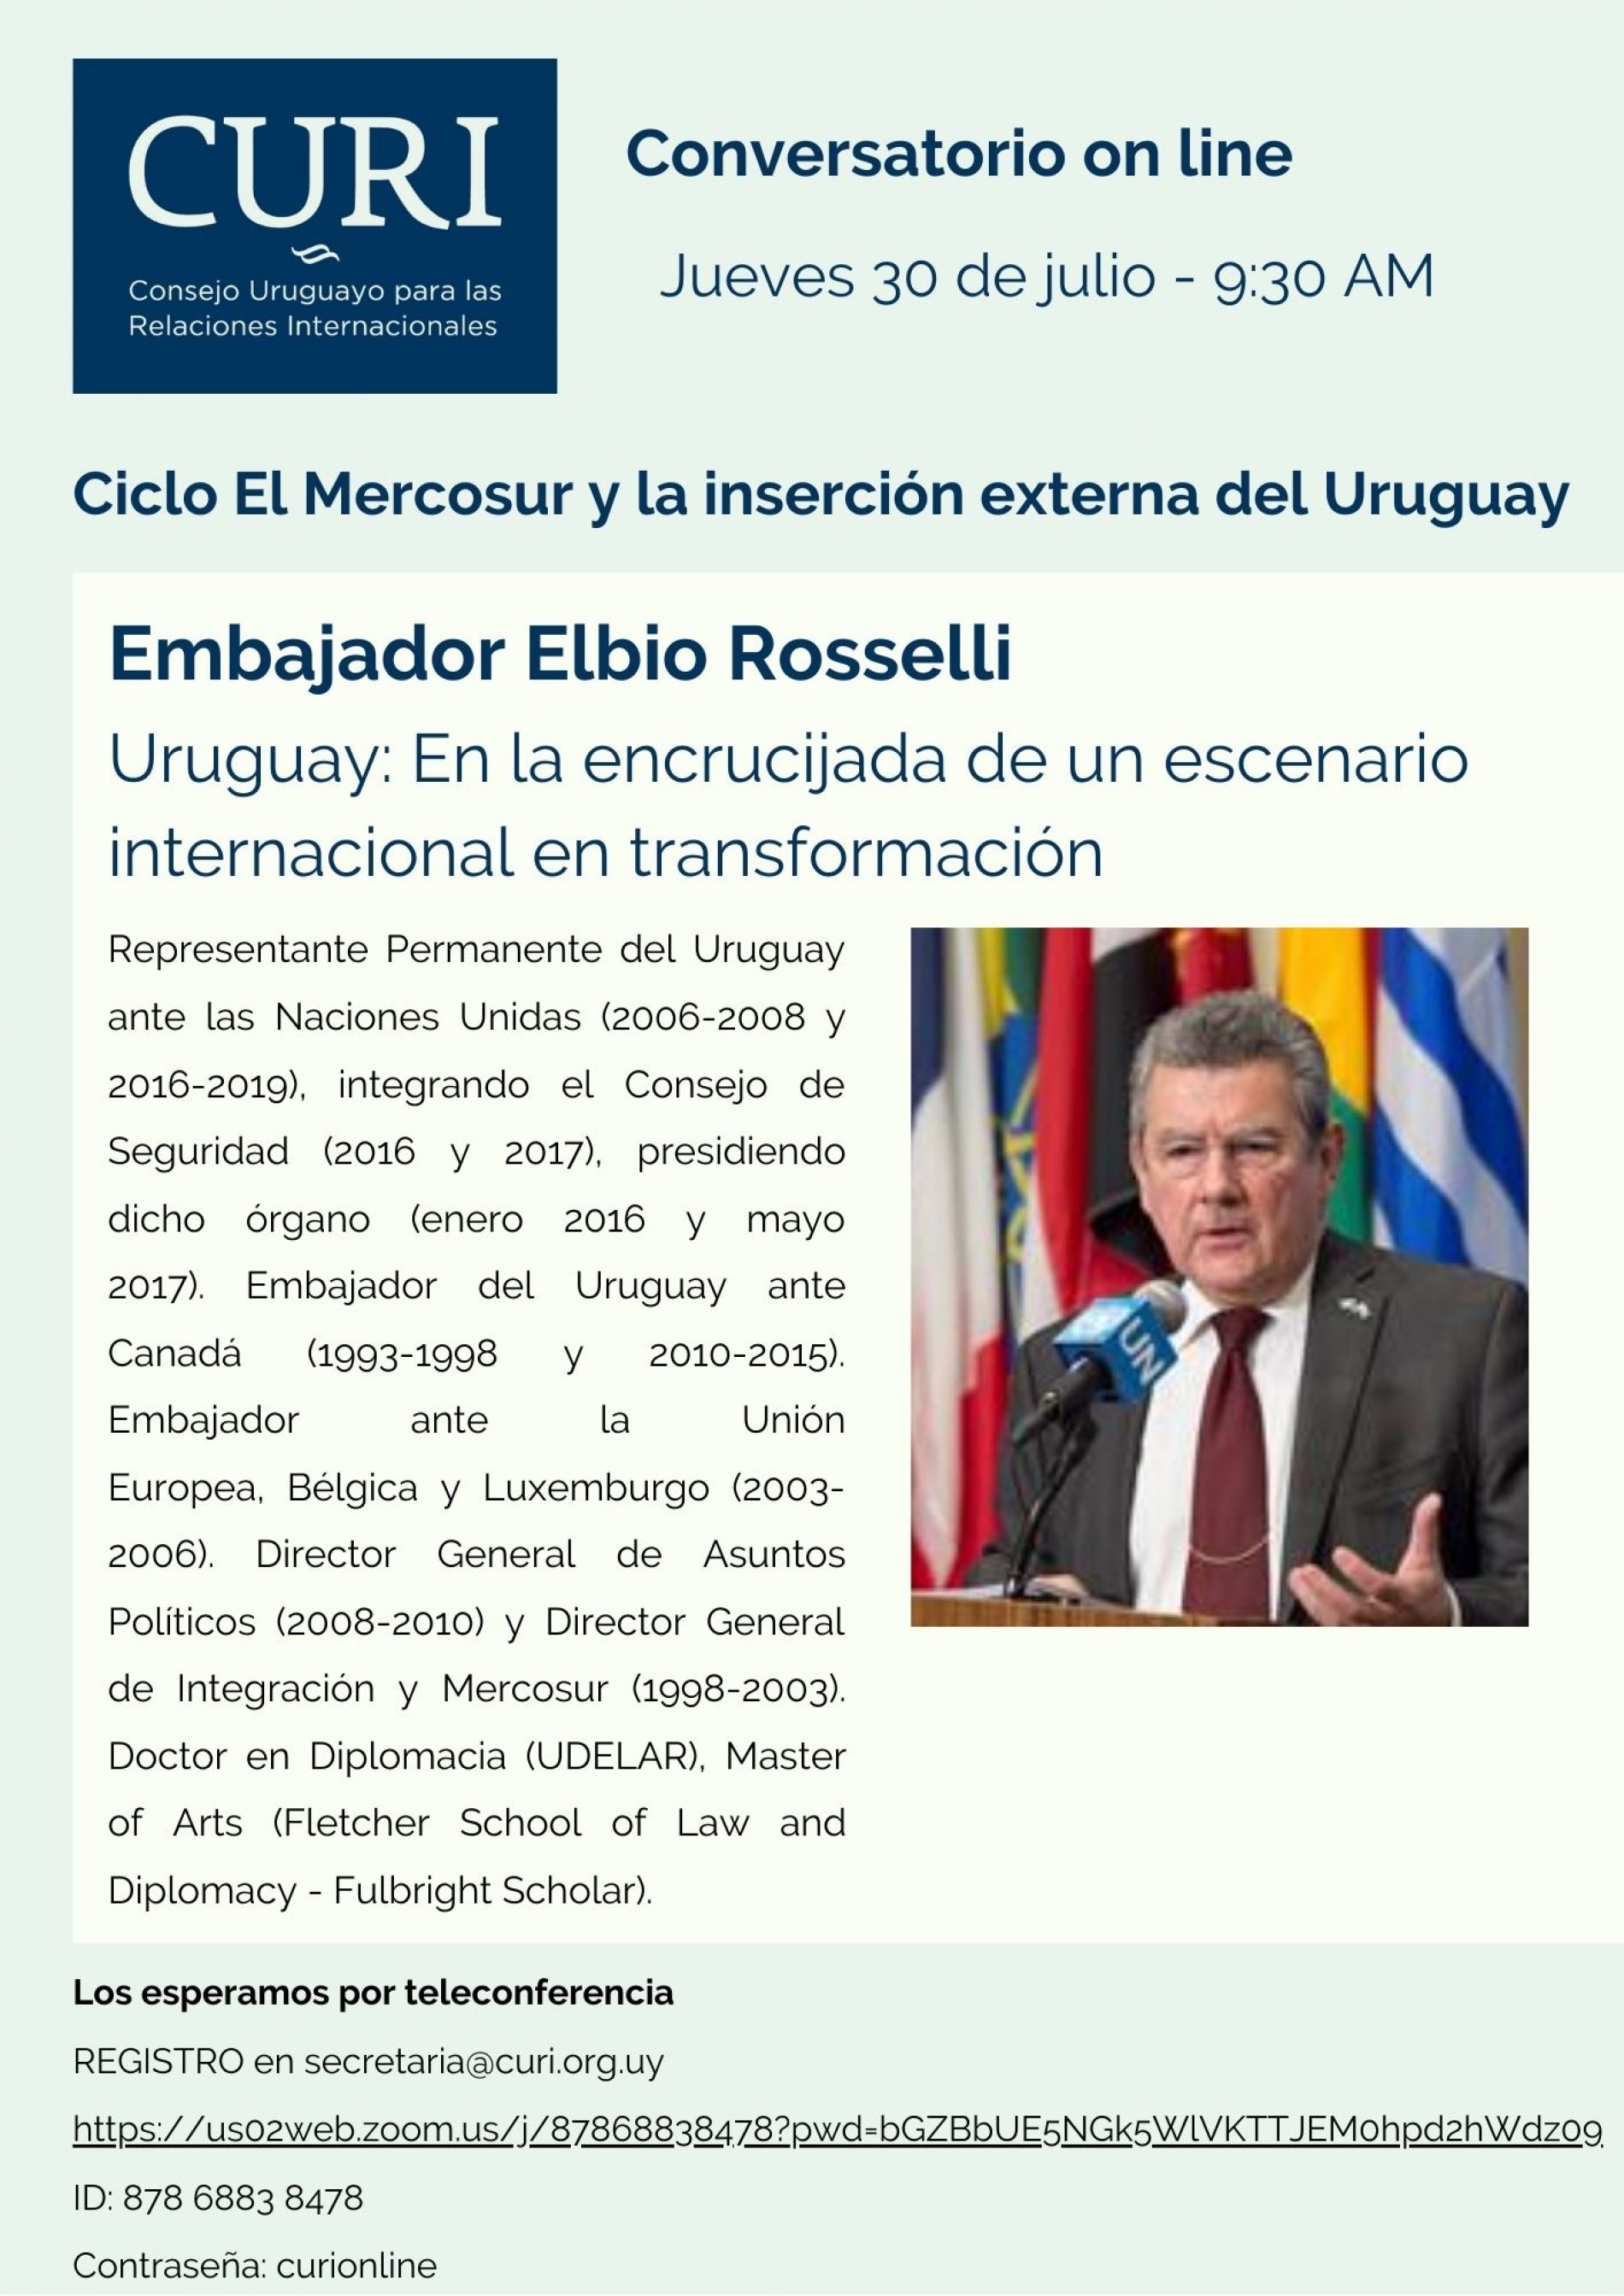 Ciclo El MERCOSUR con el Embajador Elbio Rosselli